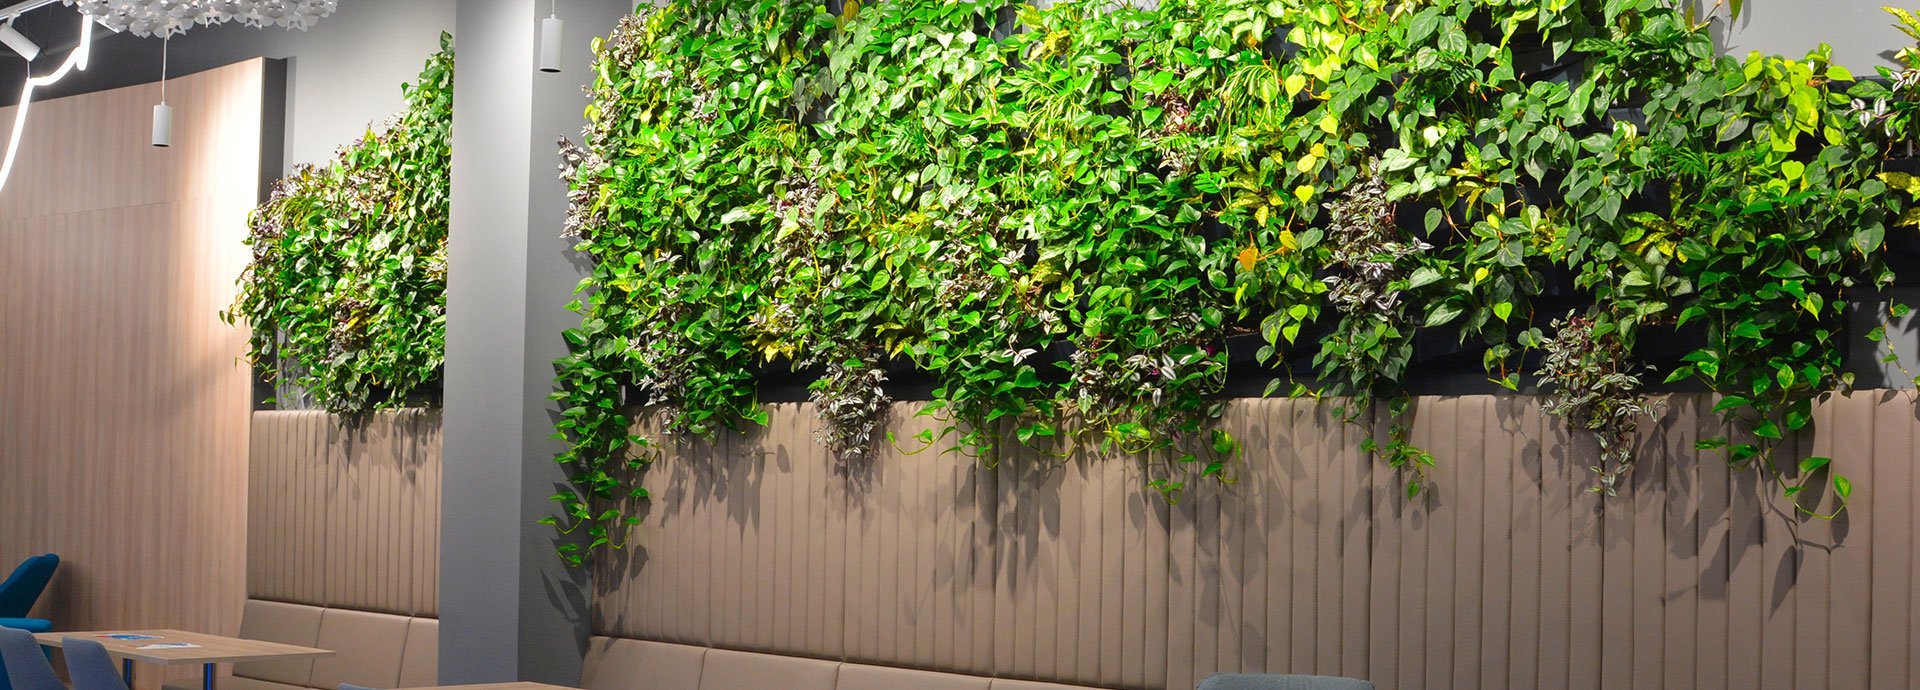 Objevte krásu vertikálních stěn z živých rostlin